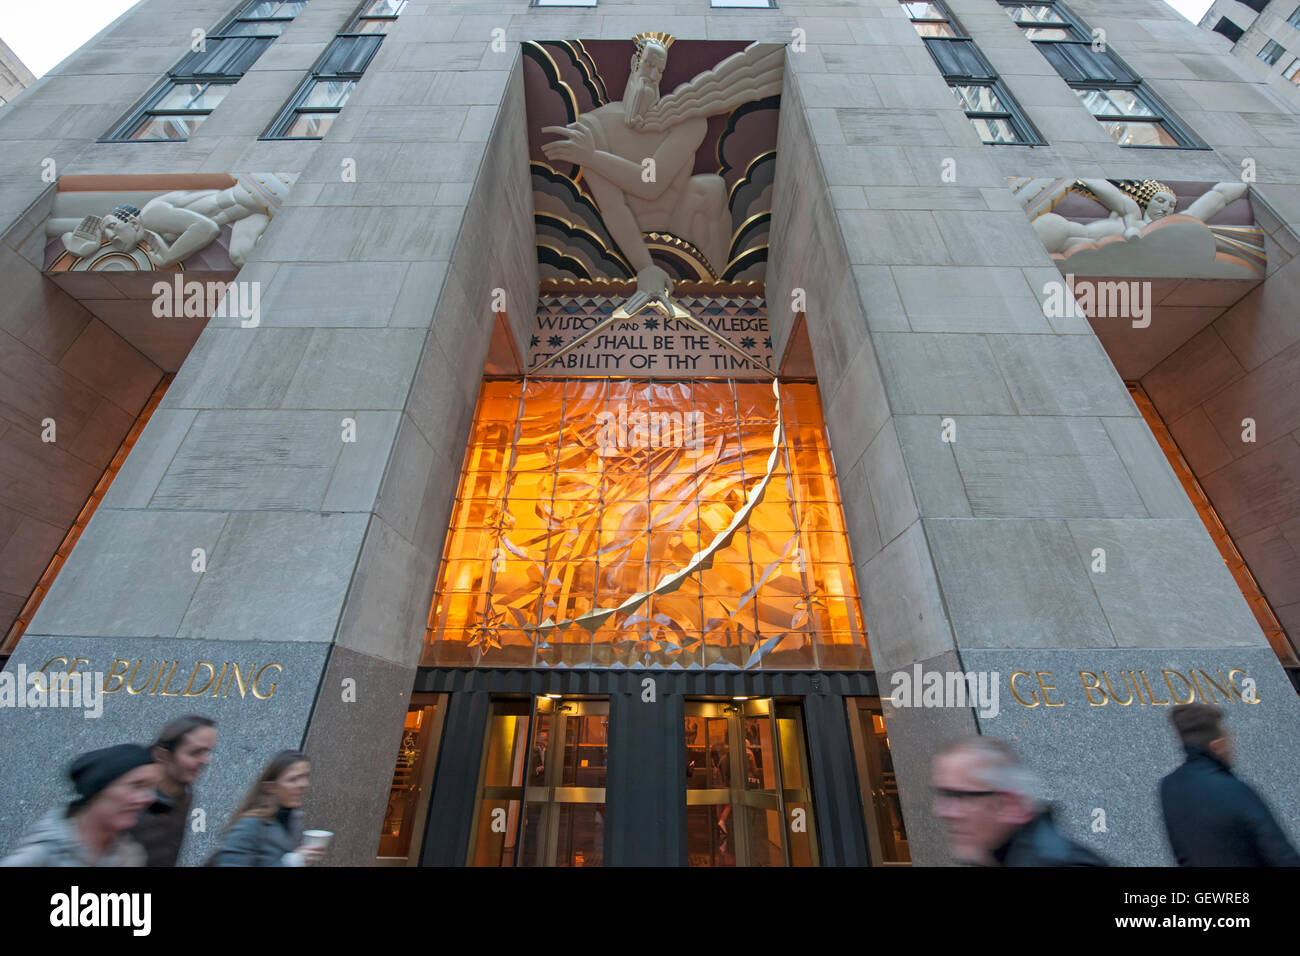 Die Skulpturen Weisheit und Klang und Licht über dem Haupteingang zu 30 Rockefeller Plaza als GE Building bekannt. Stockfoto